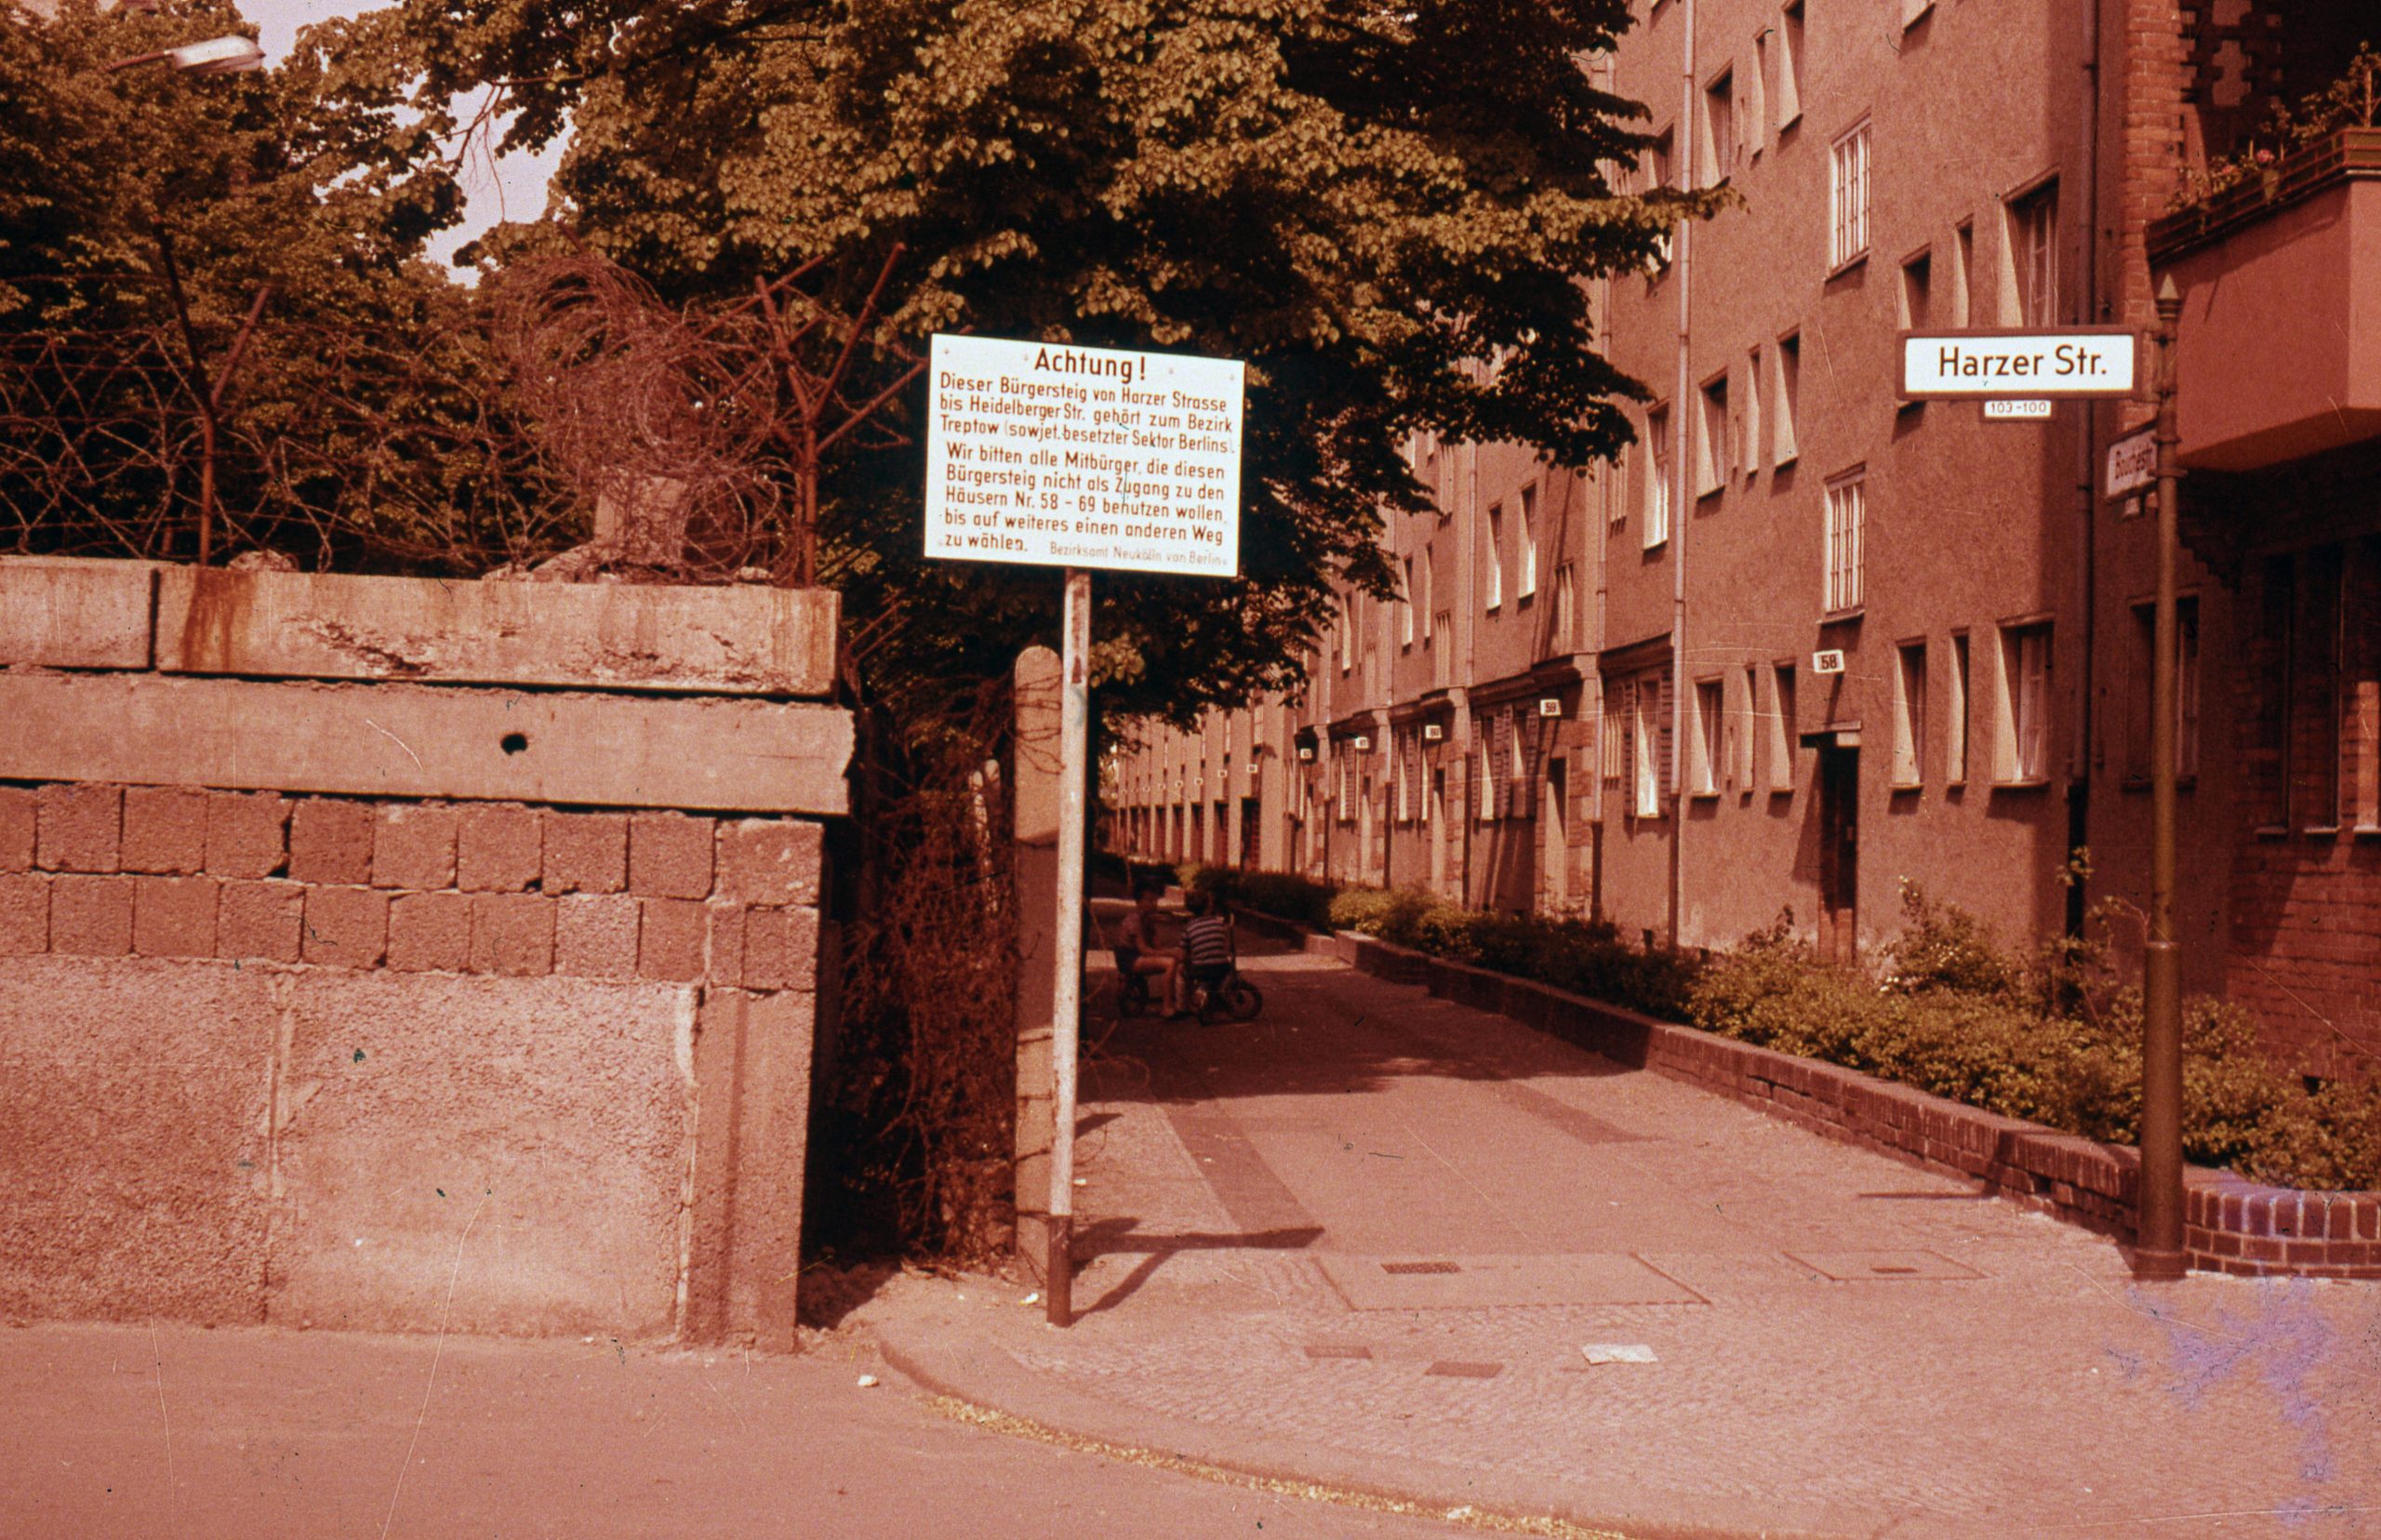 Harzer Straße, frühe 1960er-Jahre. Foto: Imago/Gerhard Leber 